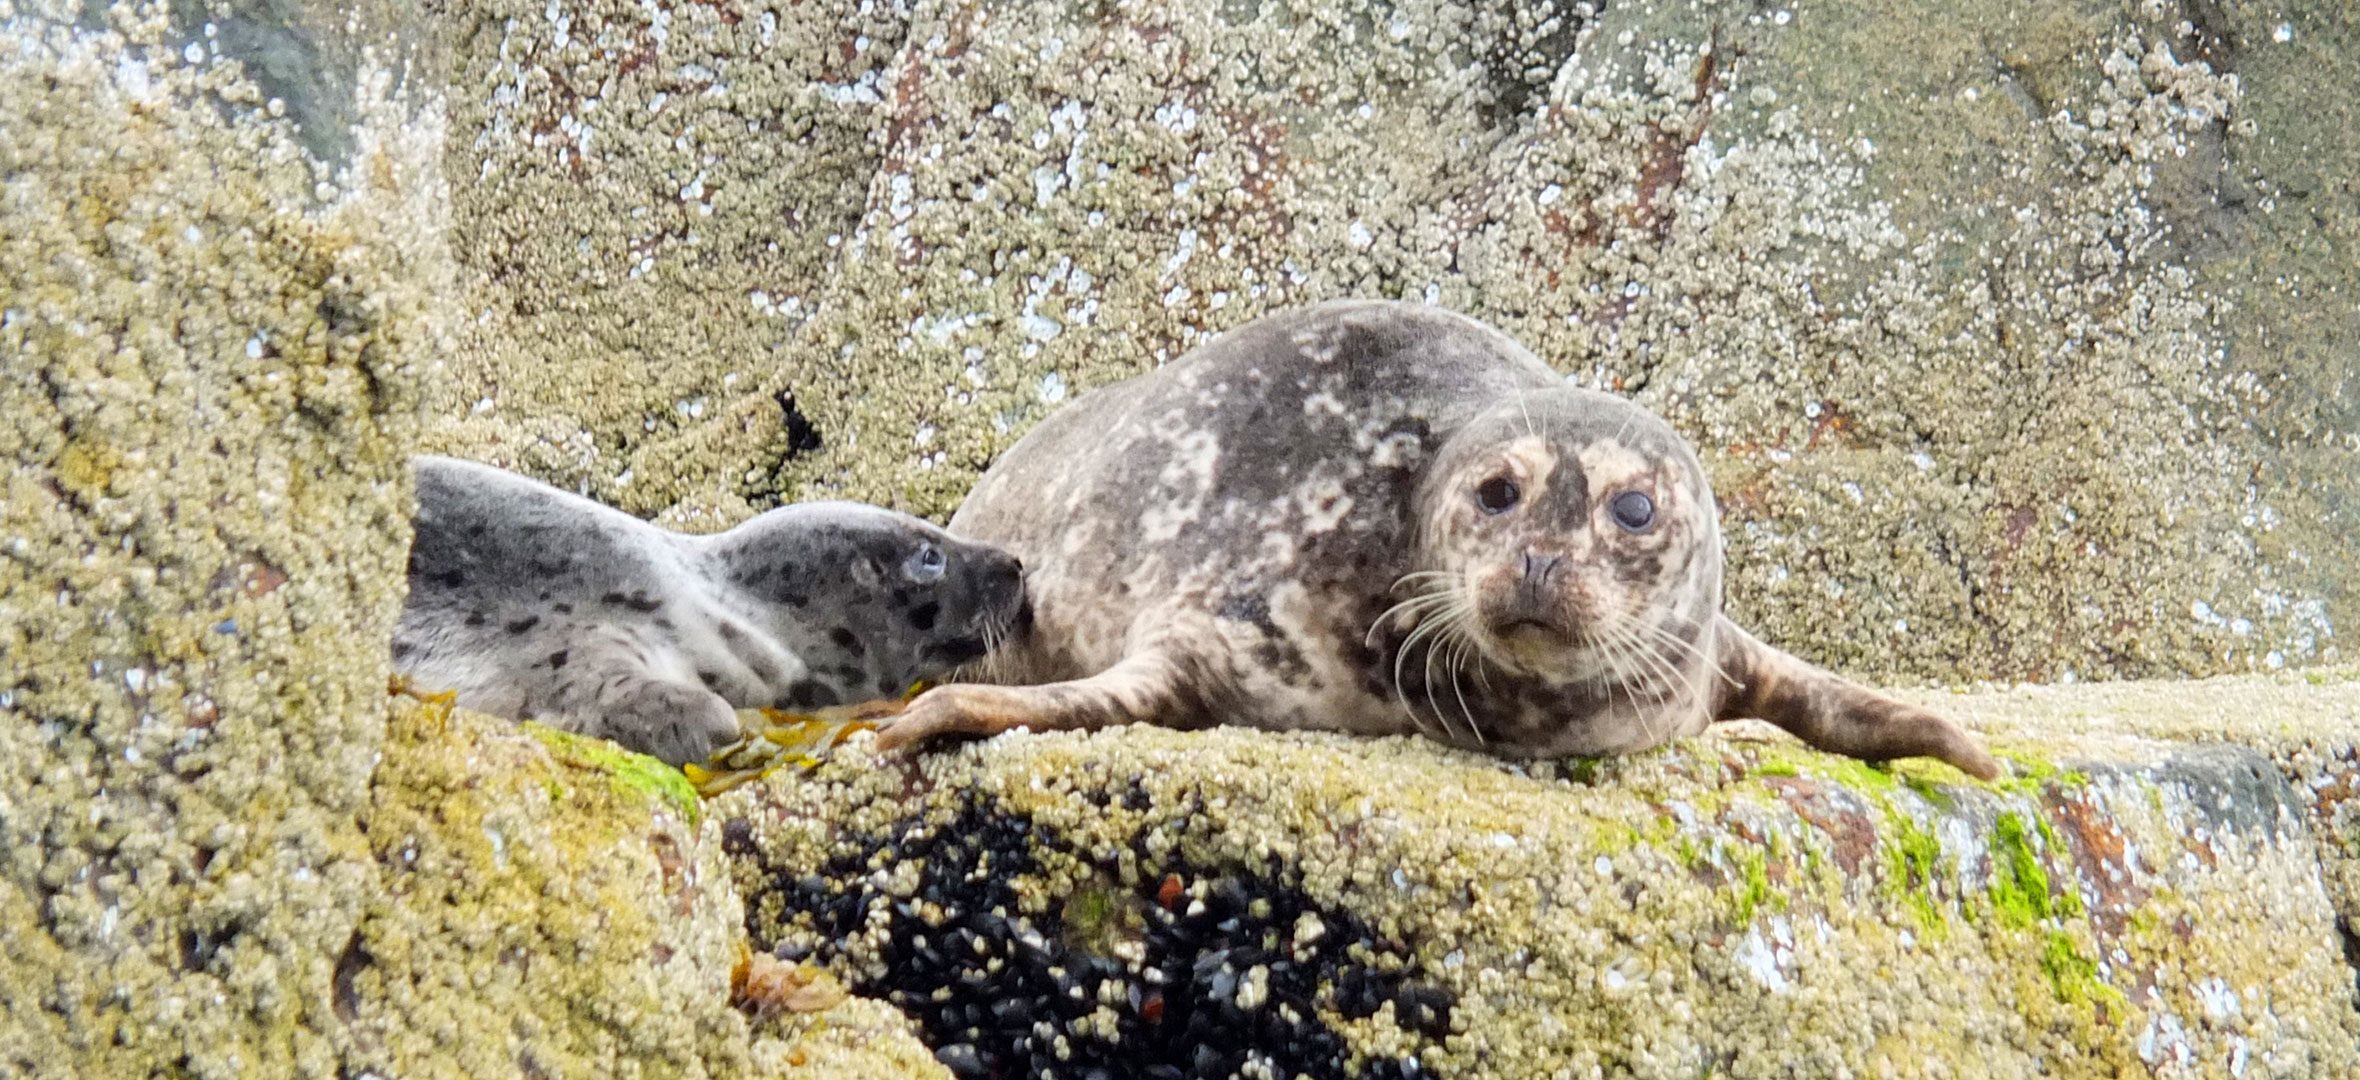 Harbour seals